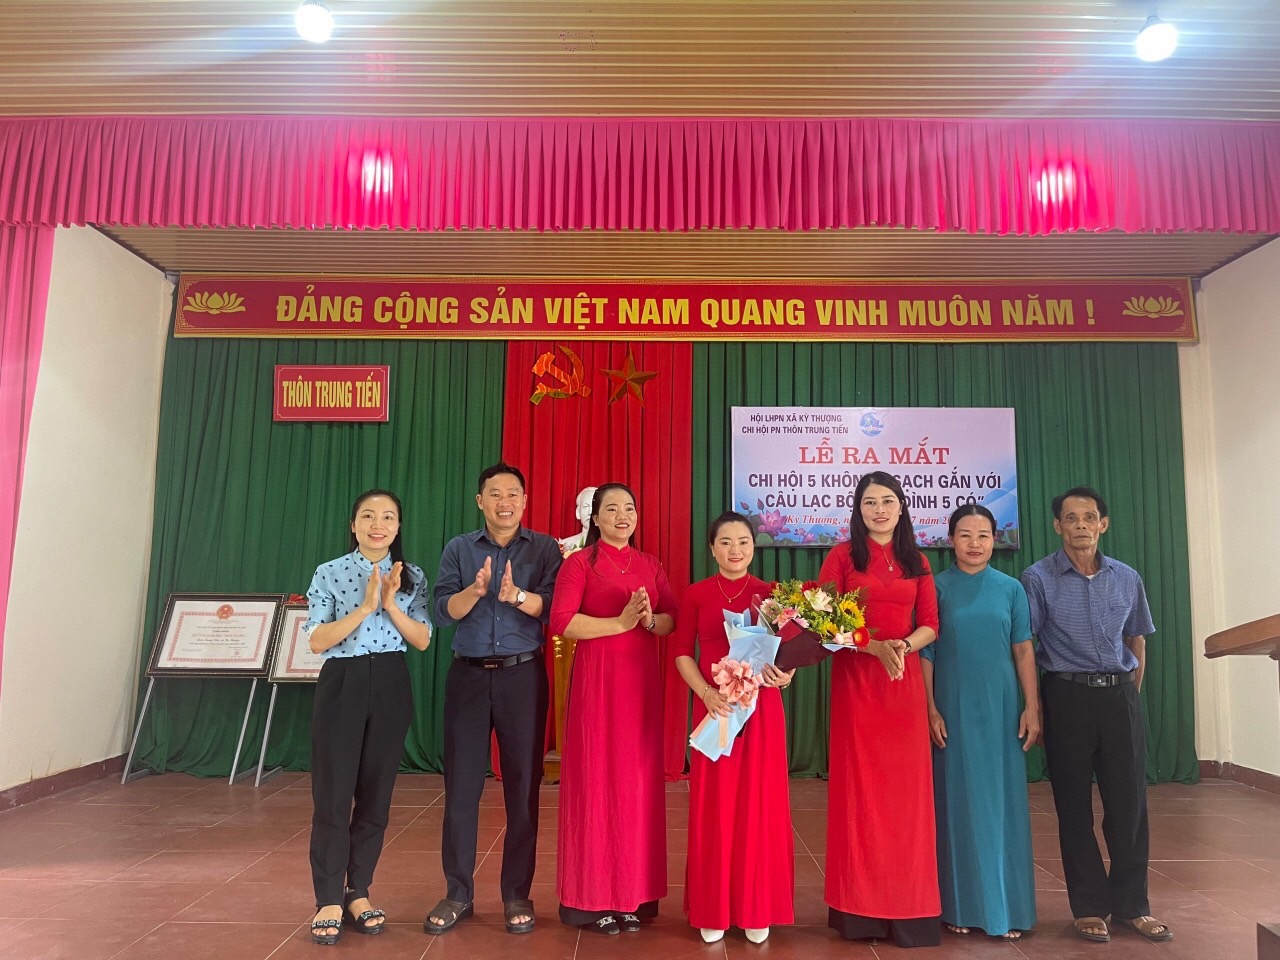 Chi hội phụ nữ thôn Trung Tiến tổ chức ra mắt câu lạc bộ phụ nữ 5 không, 3 sạch